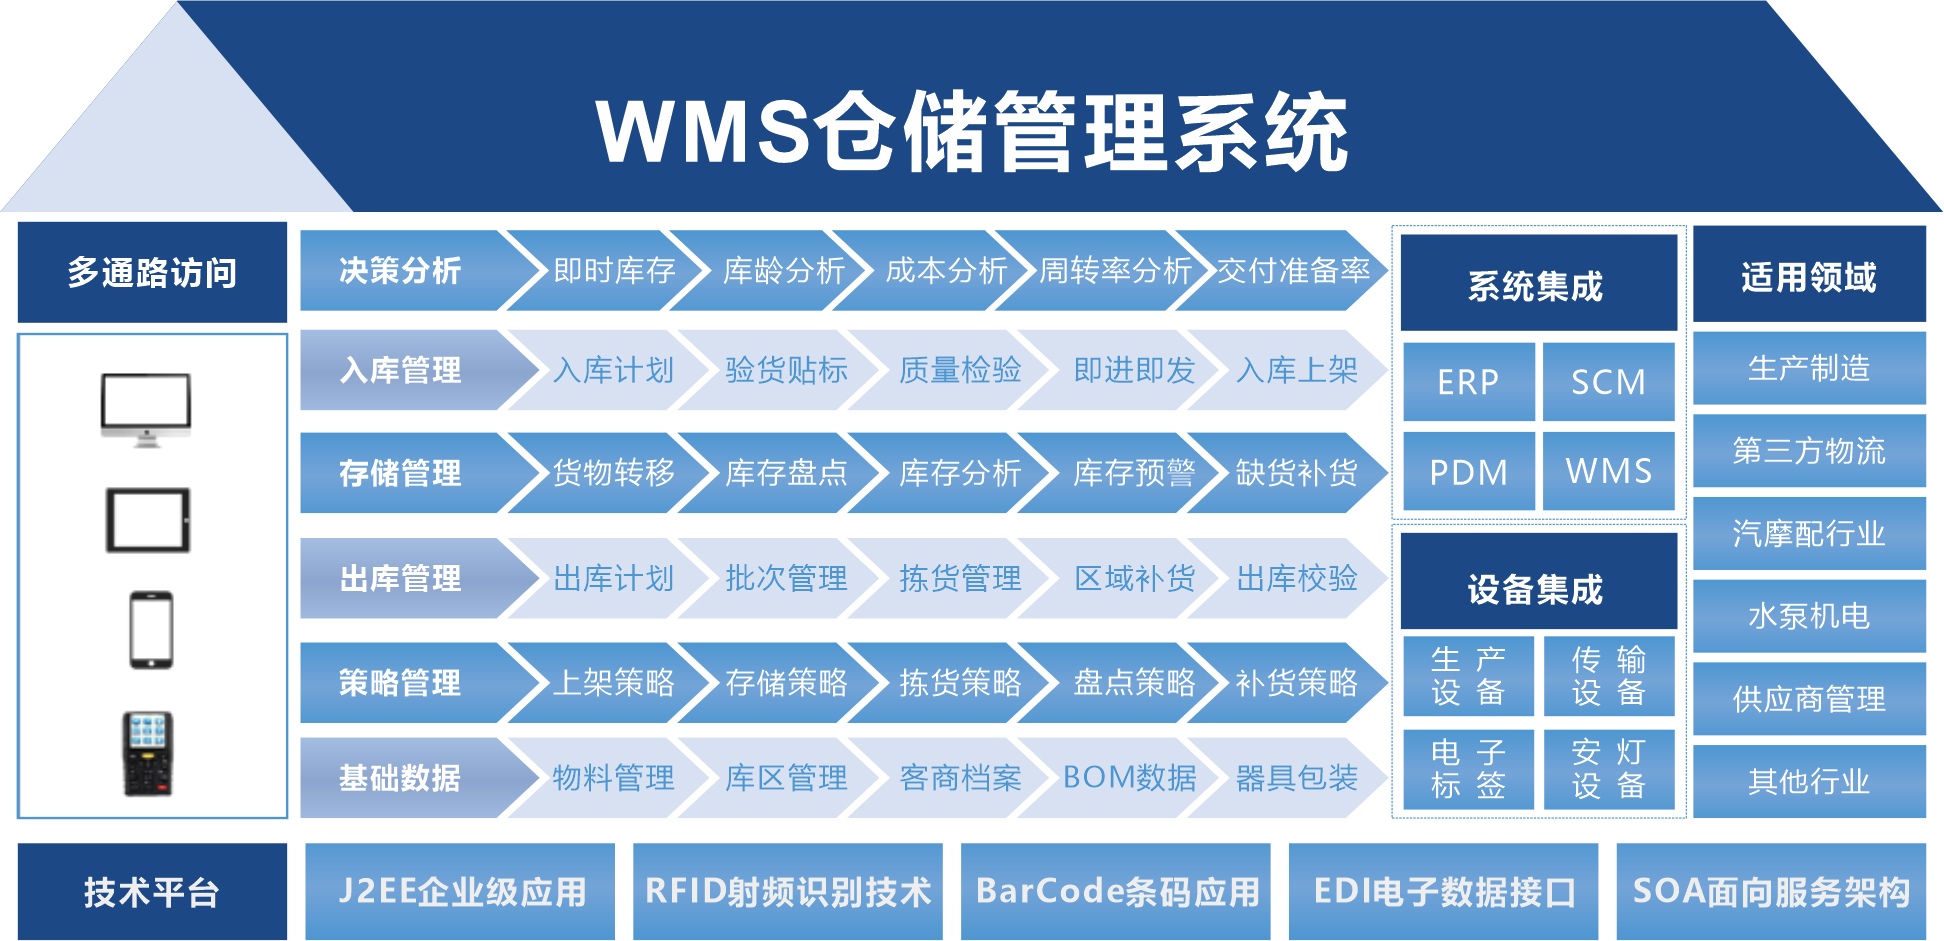 WMS 仓储管理系统功能模块